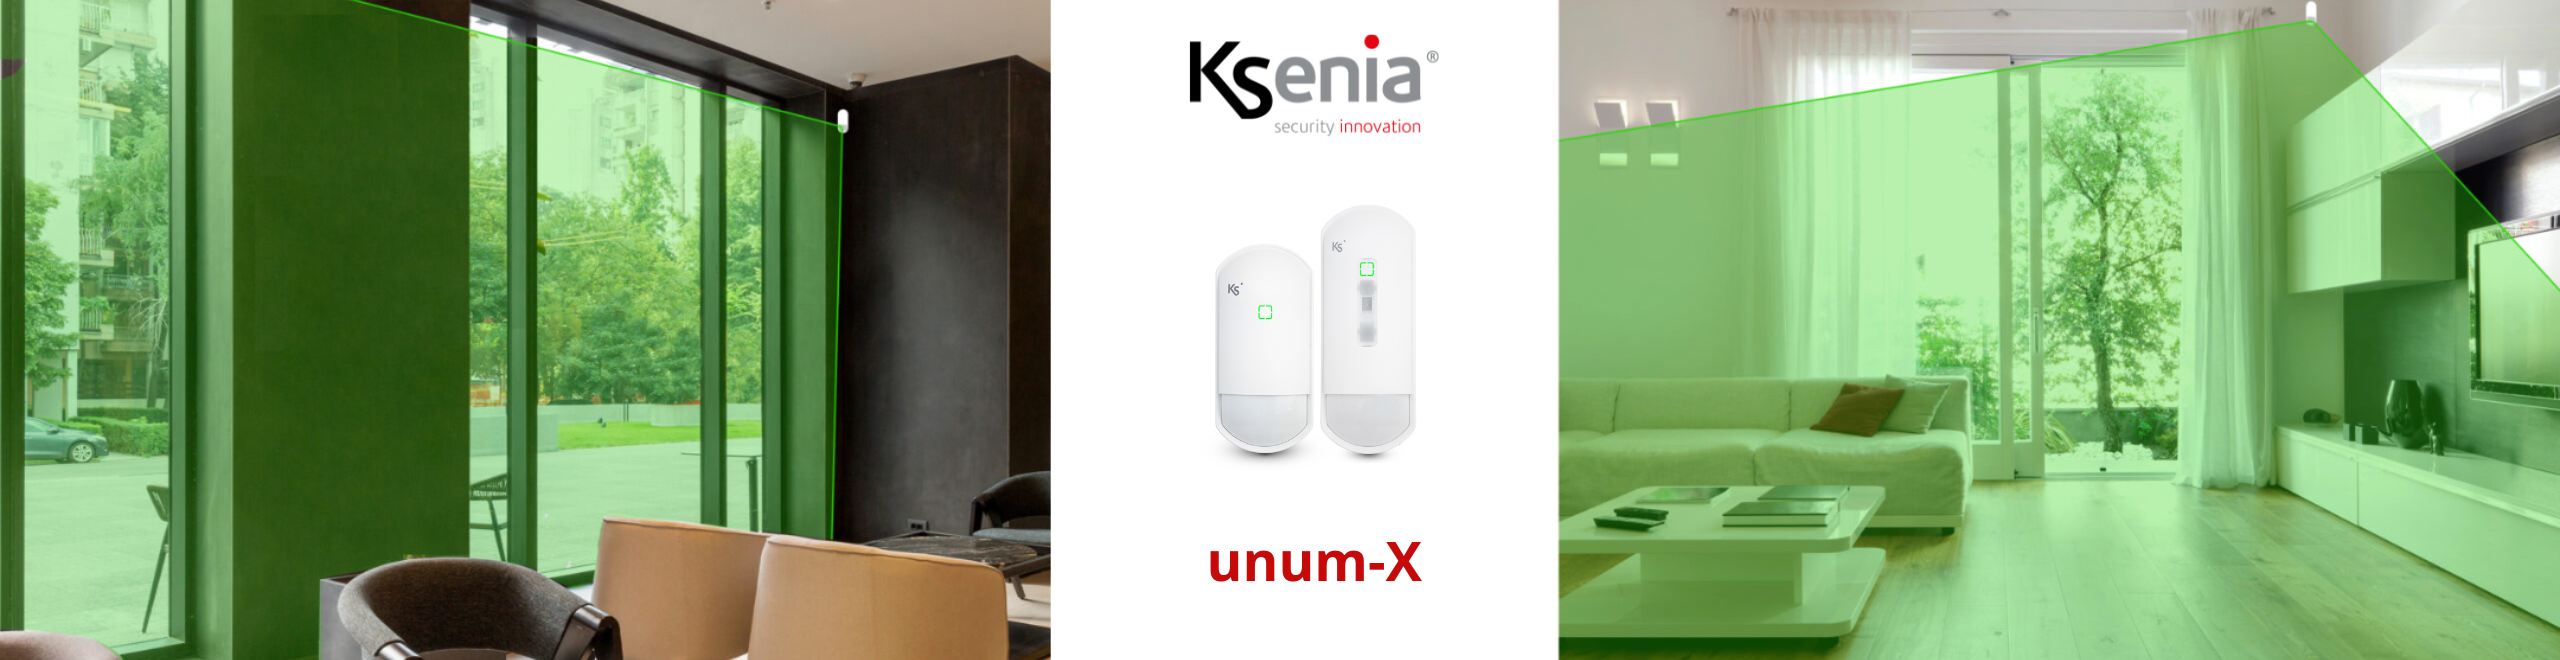 unum-X von Ksenia Security